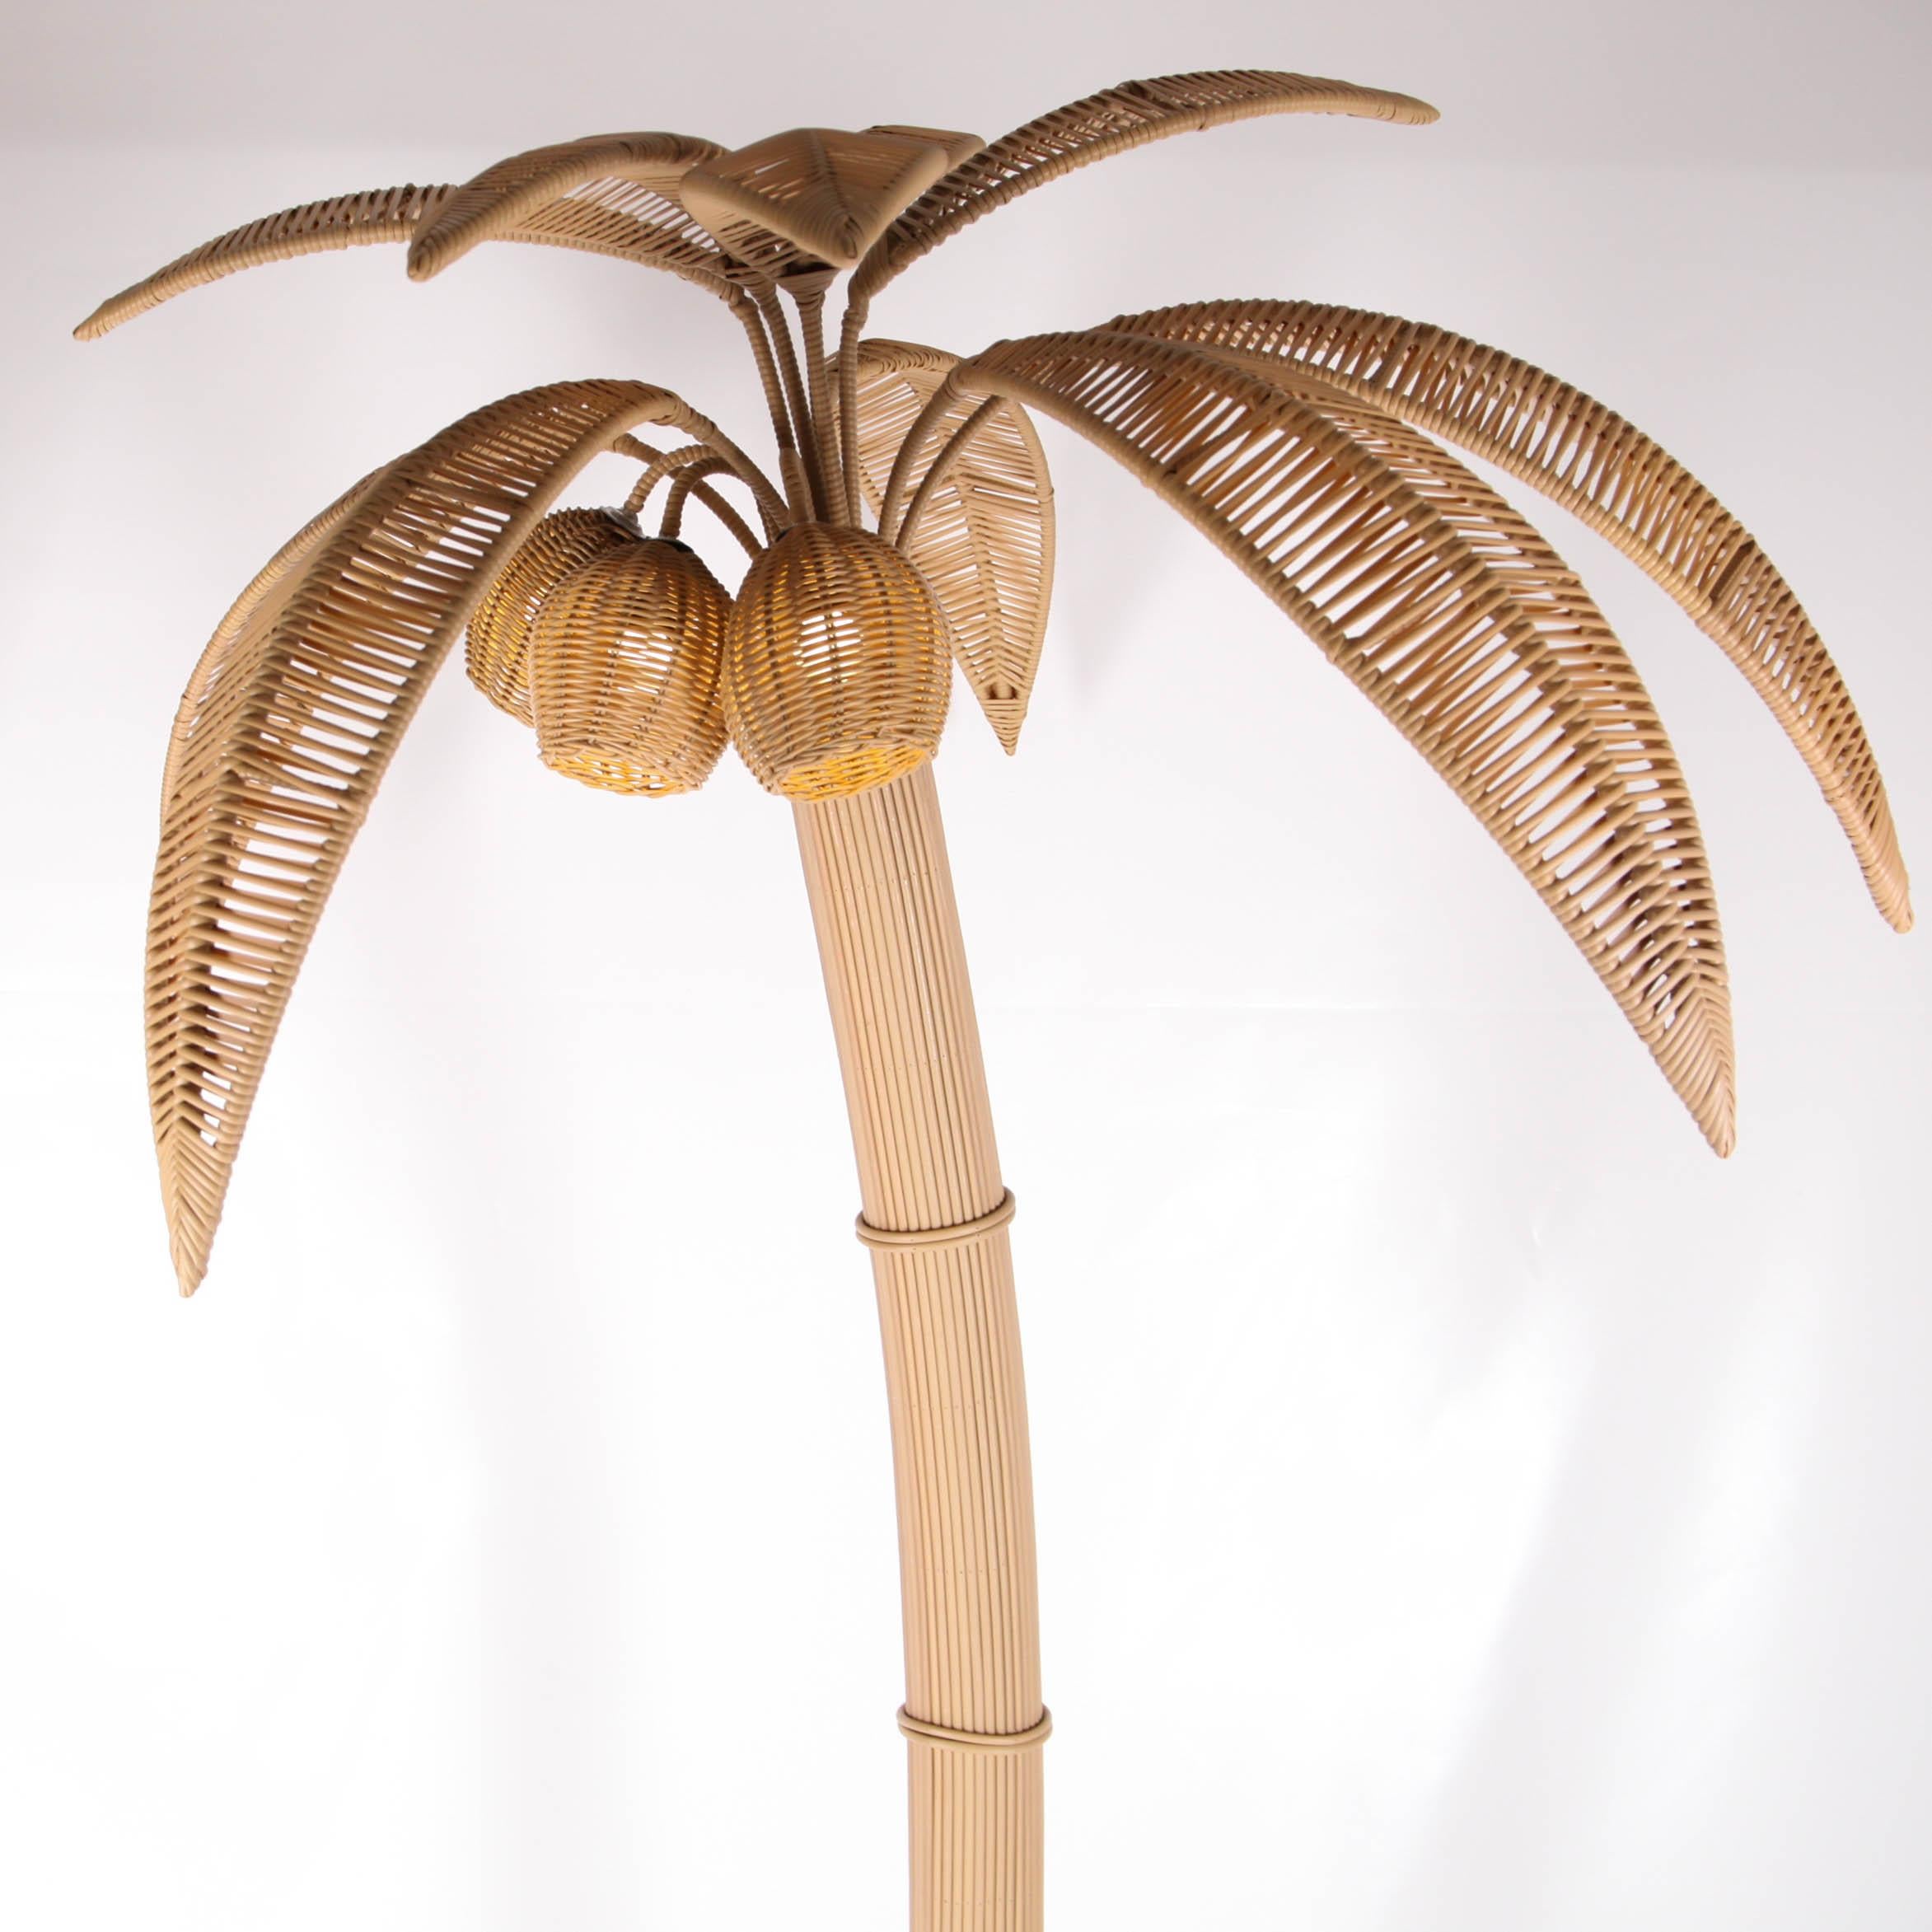 Lampadaire en rotin synthétique fait main en forme de cocotier ou de palmier pour l'extérieur et/ou l'intérieur. Vous pouvez facilement transformer votre jardin en une ambiance exotique. Il est livré avec 3 lampes (une dans chaque noix de coco). La